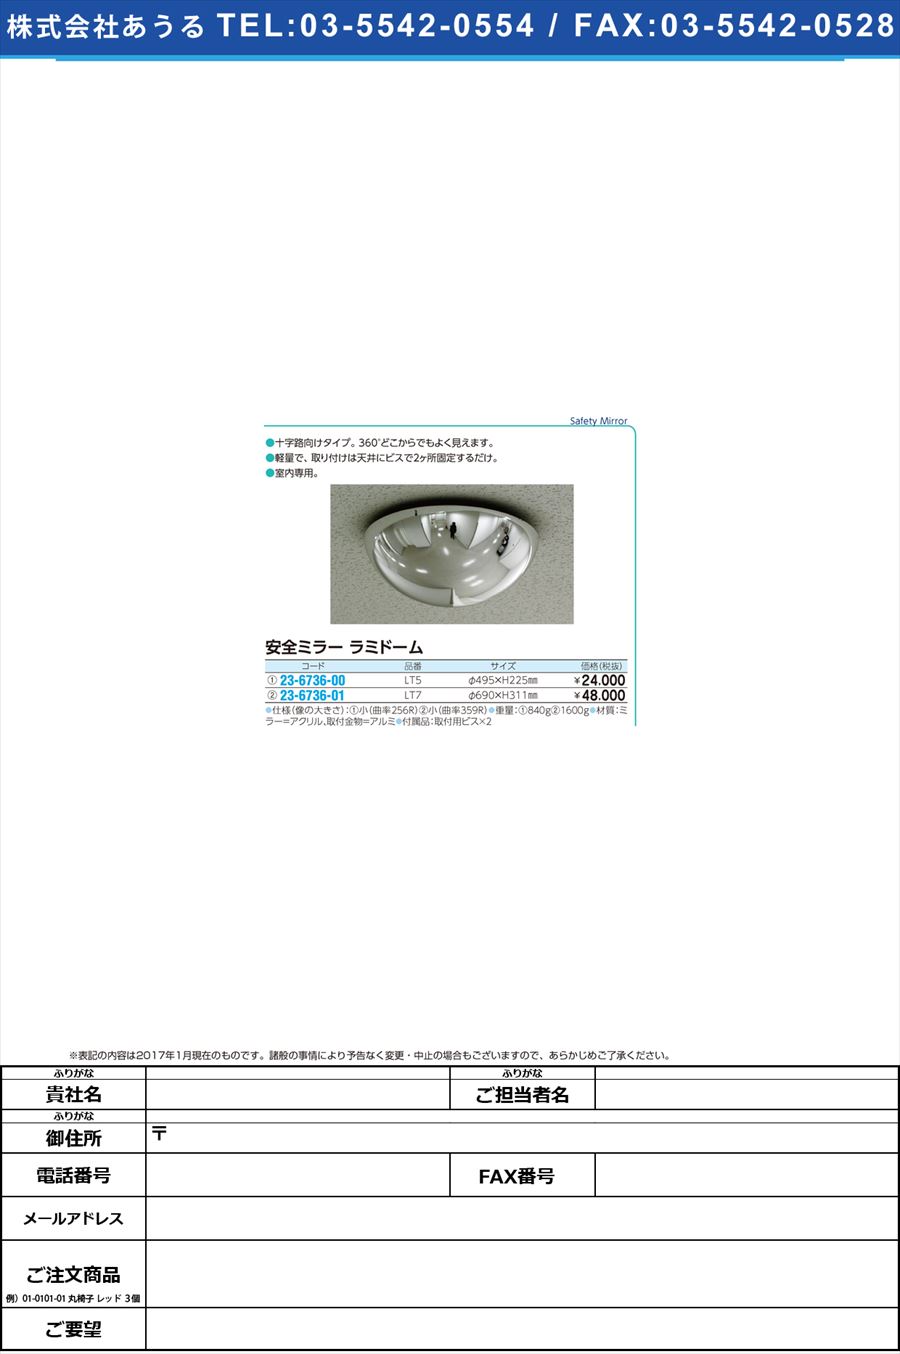 (23-6736-00)安全ミラー ラミドーム ｱﾝｾﾞﾝﾐﾗｰﾗﾐﾄﾞｰﾑ LT5(ｹｲ495X225MM)(23-6736-00)【1台単位】【2017年カタログ商品】